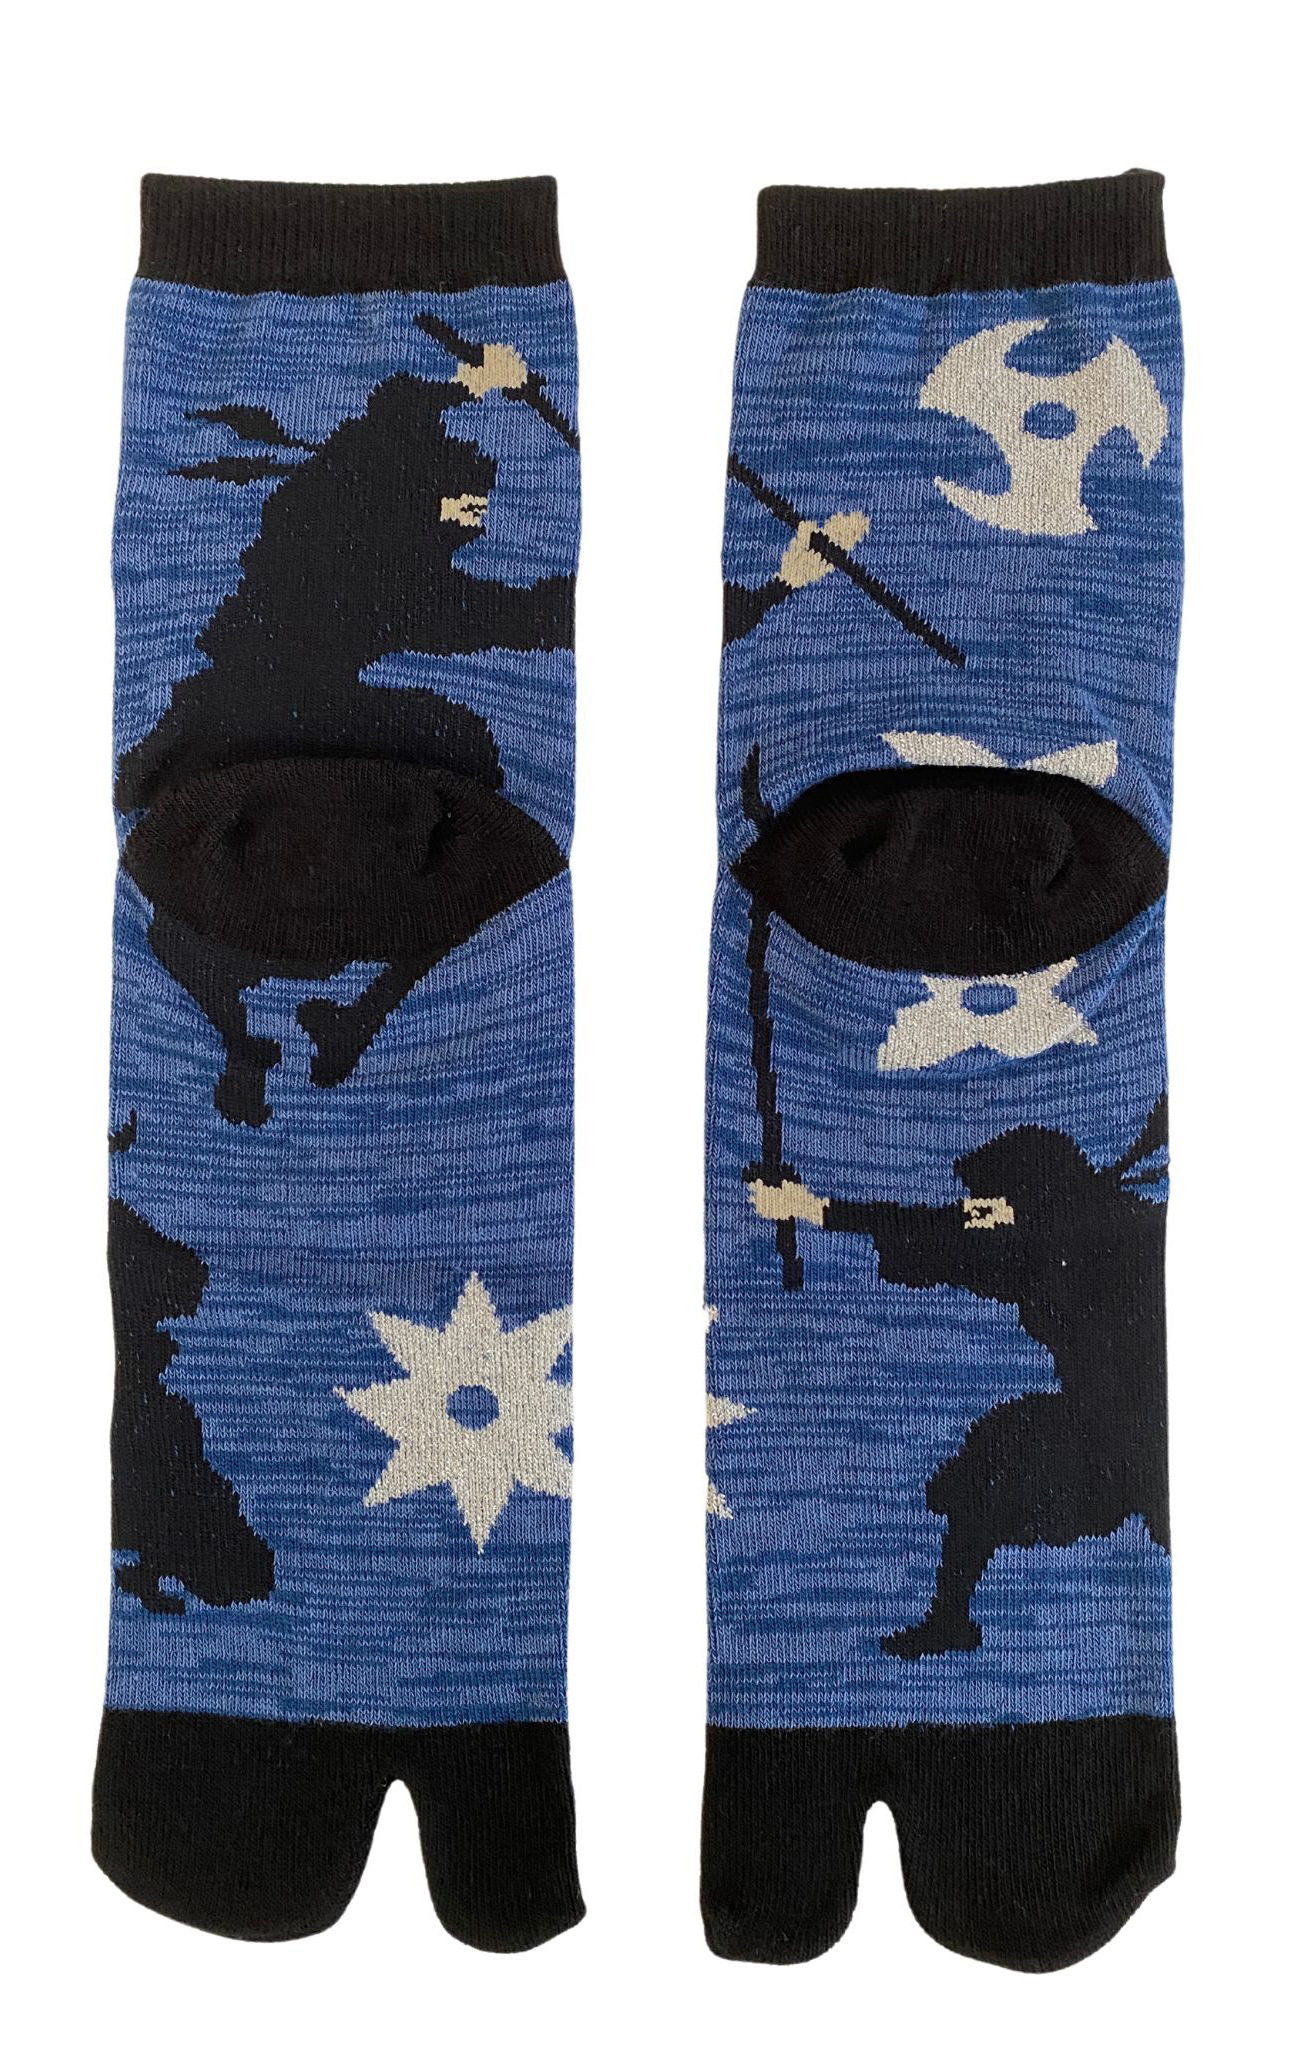 5392 ninja blue tabi socks japan